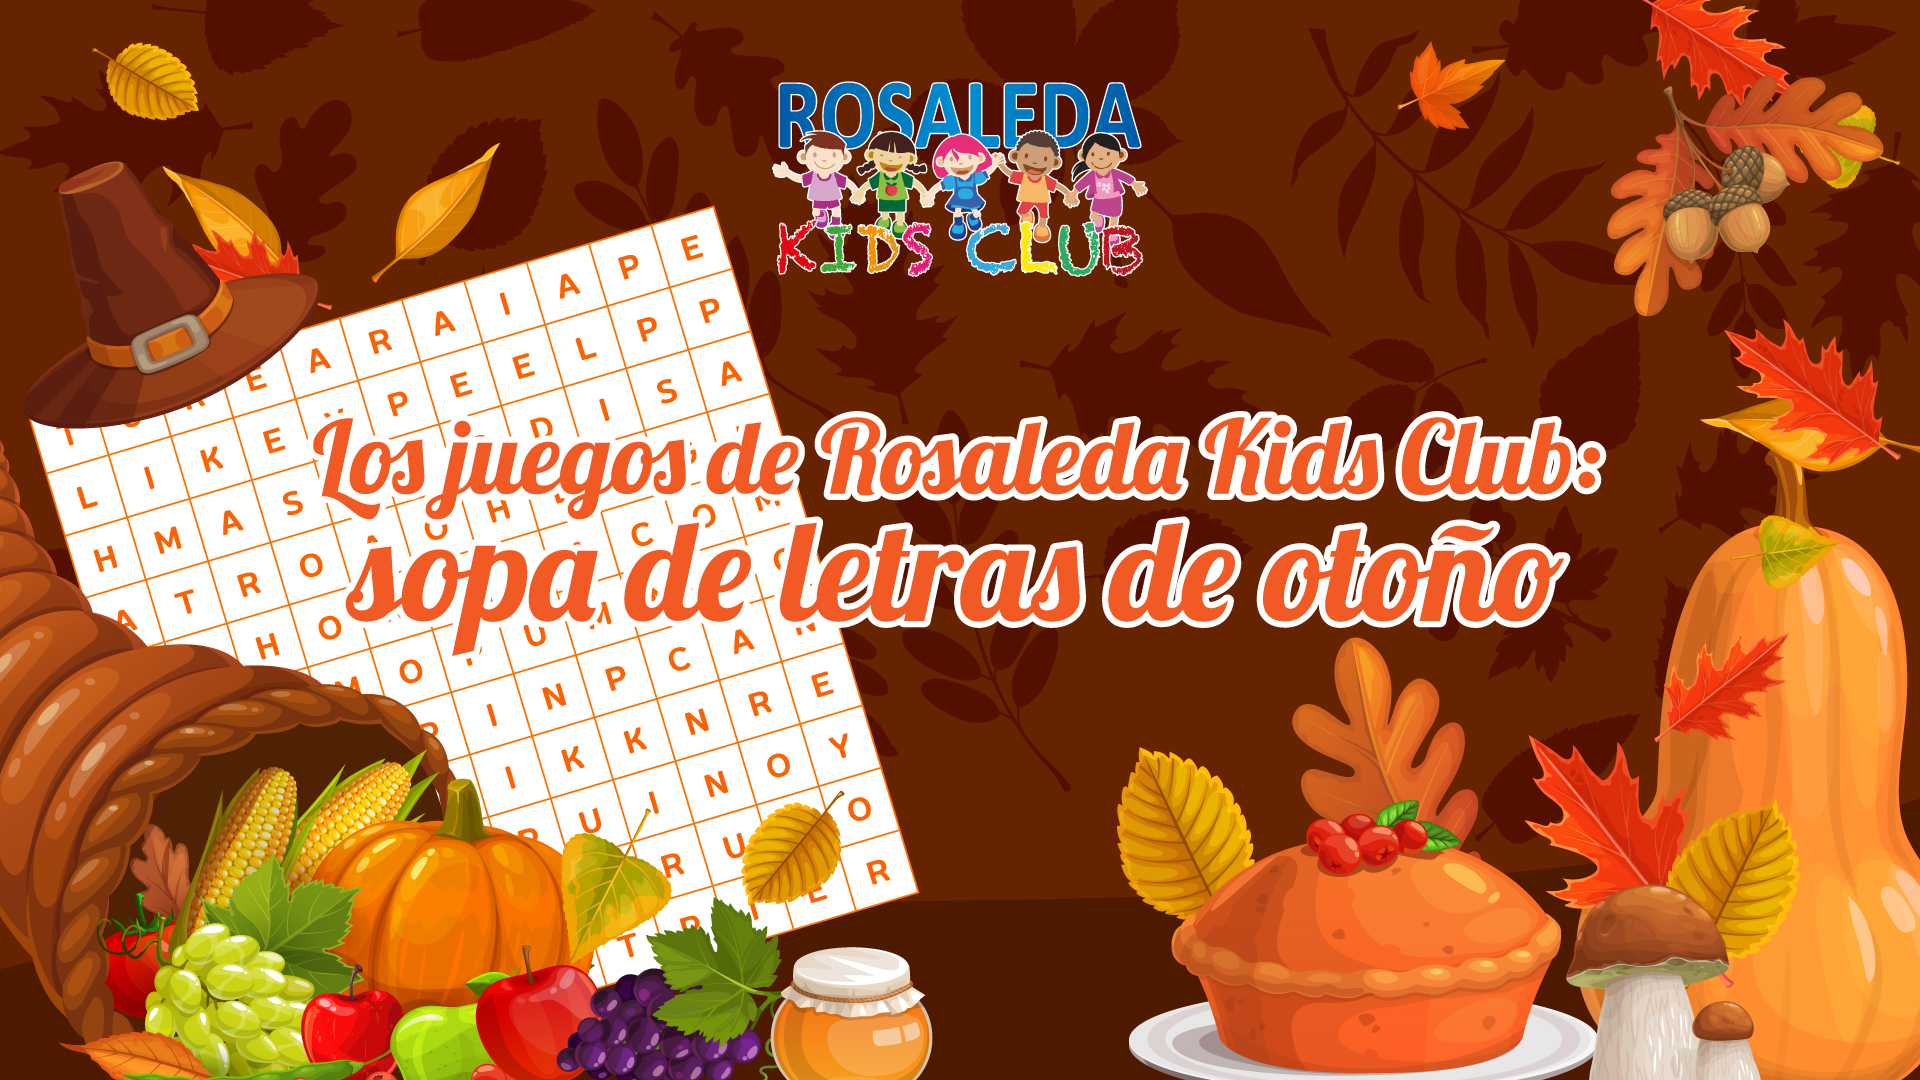 Los juegos de Rosaleda Kids Club: sopa de letras de otoño